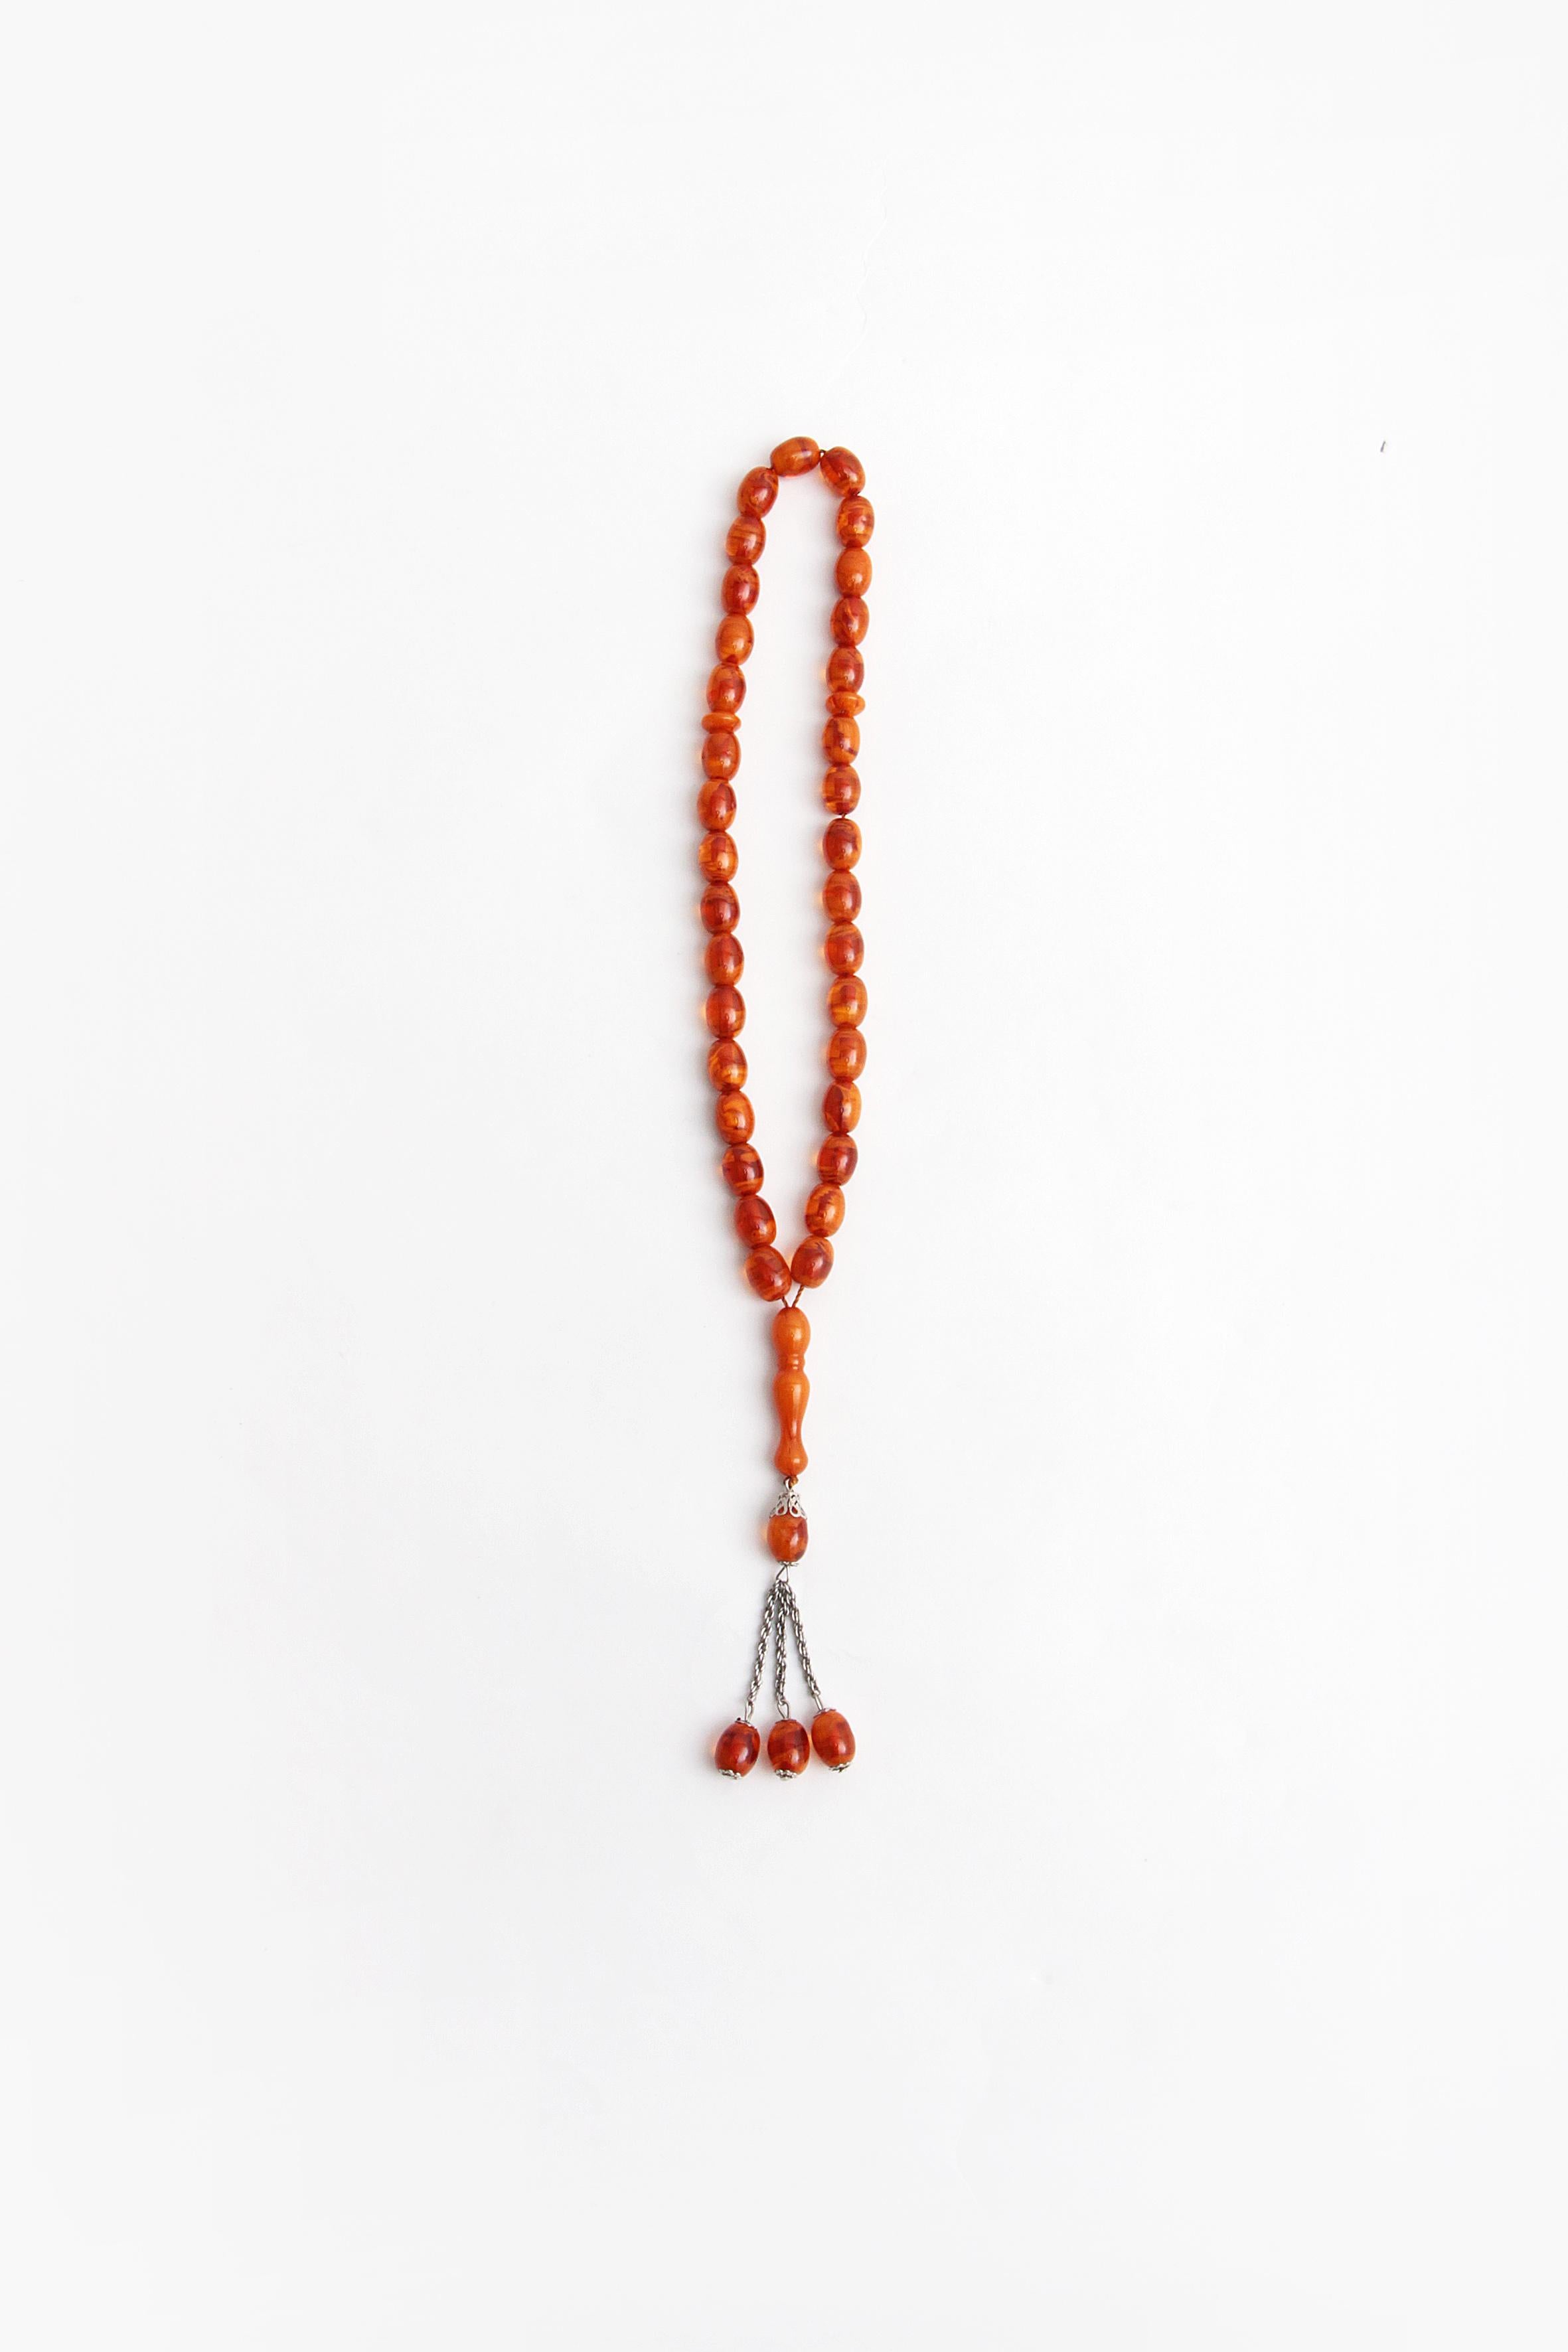 Il s'agit d'un magnifique collier de prière en ambre, joliment orné de détails métalliques.

Il s'agit d'un collier d'ambre qui est enfilé avec de belles perles régulières de couleur rouge-orange.

Le collier a acquis une belle patine au fil des